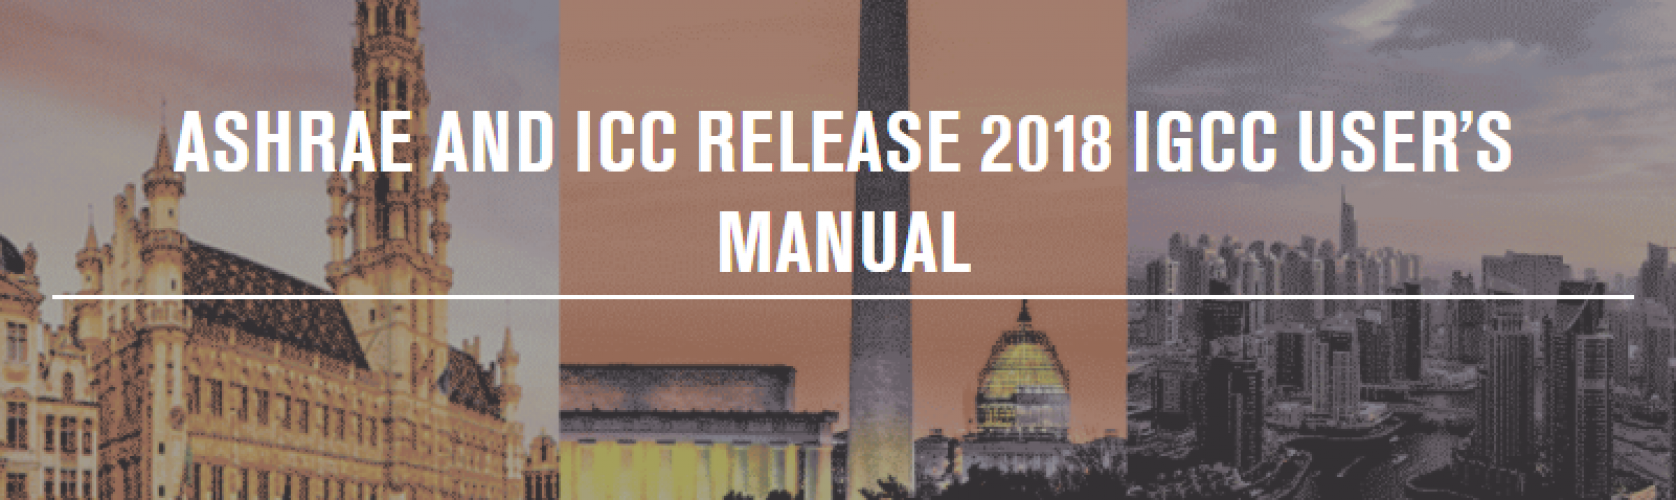 ASHRAE e ICC Publican el Manual de Usuario para el IgCC 2018